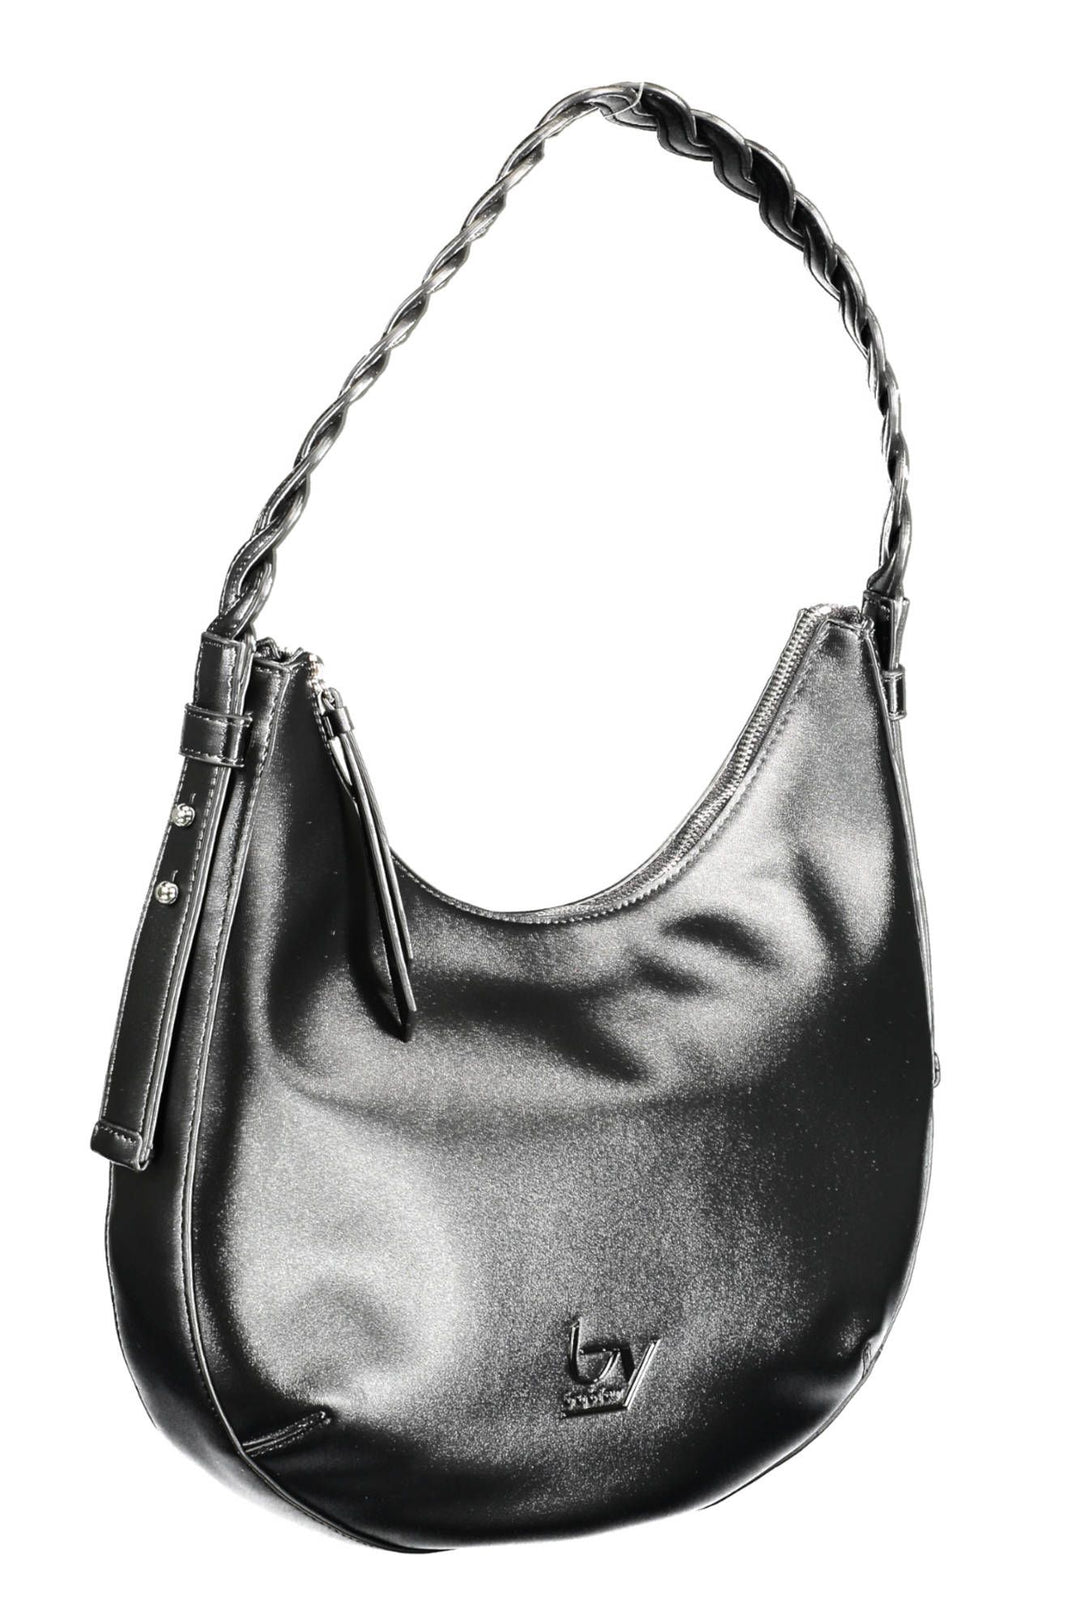 Byblos Chic Contrasting Detail Black Shoulder Bag